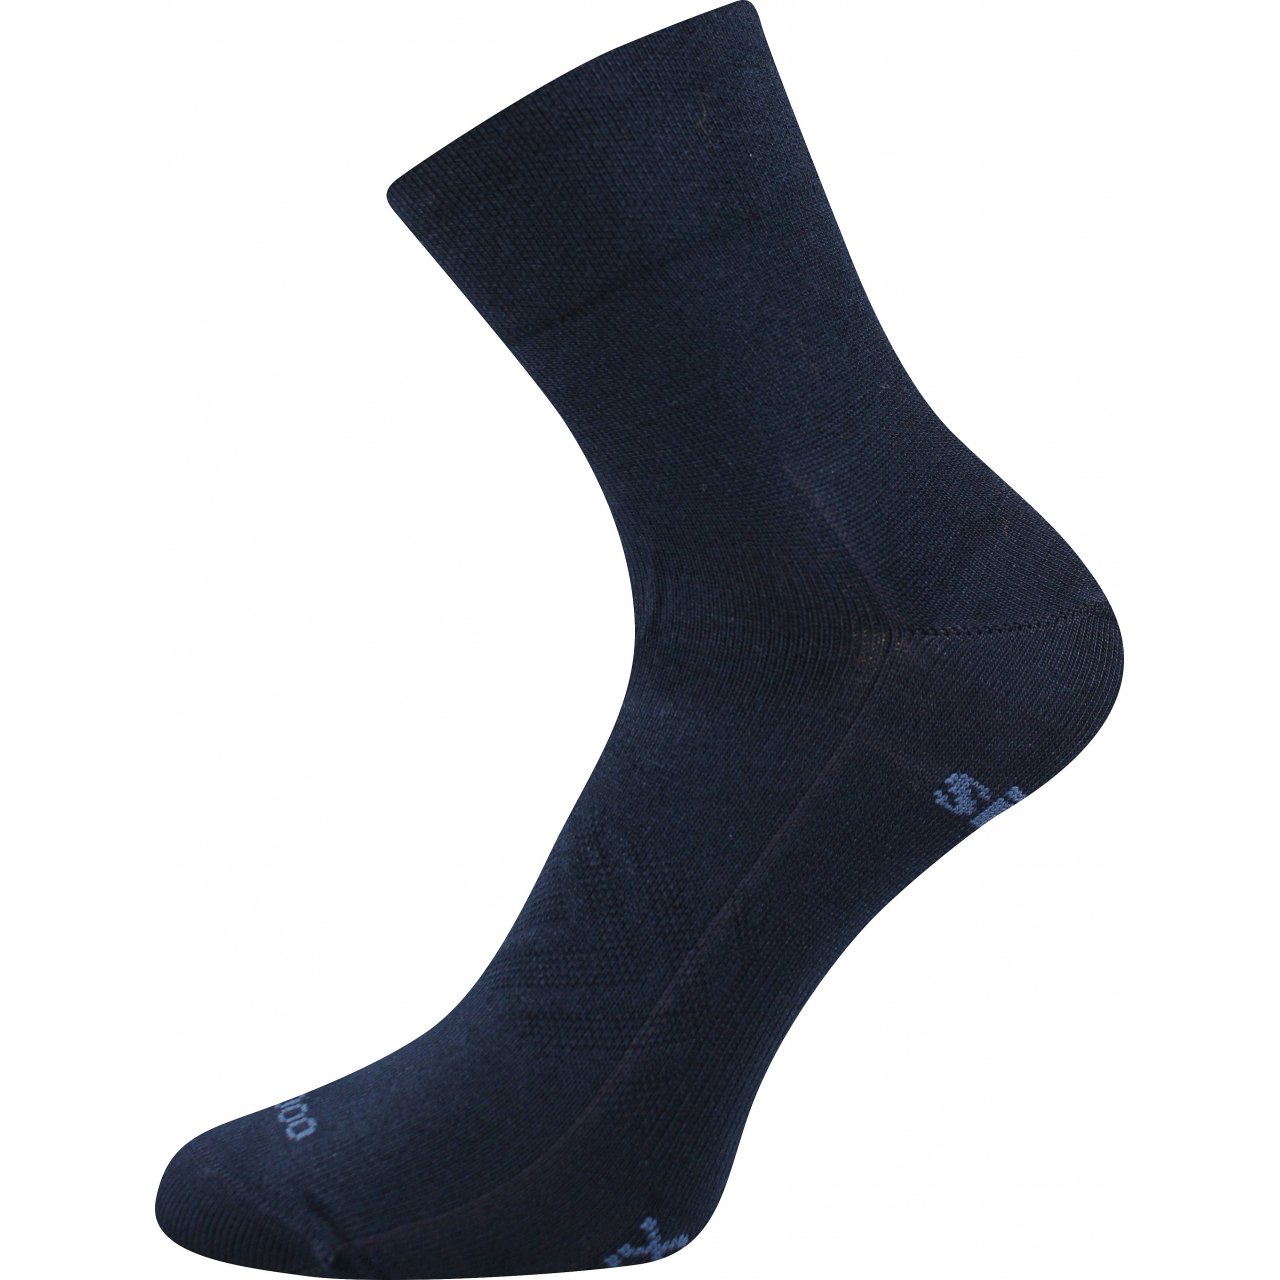 Ponožky sportovní unisex Voxx Baeron - tmavě modré, 43-46